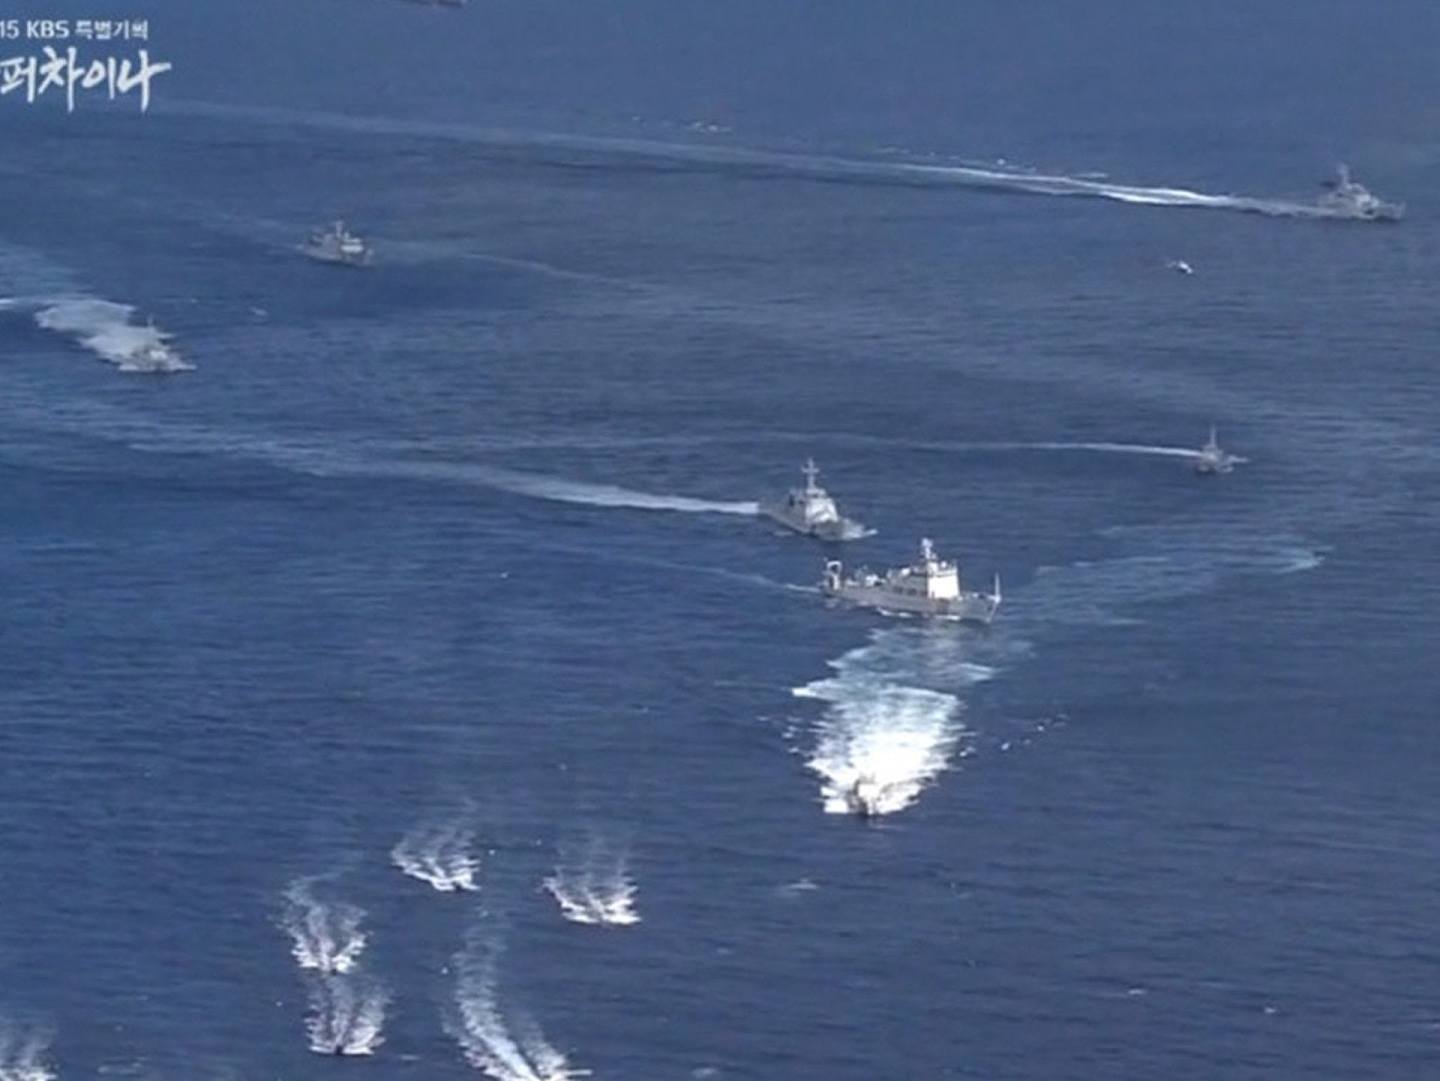 韩国电视台公开的中日执法船2013年6月在钓鱼岛海域激烈对峙画面。（韩国KBS电视台视频截图）